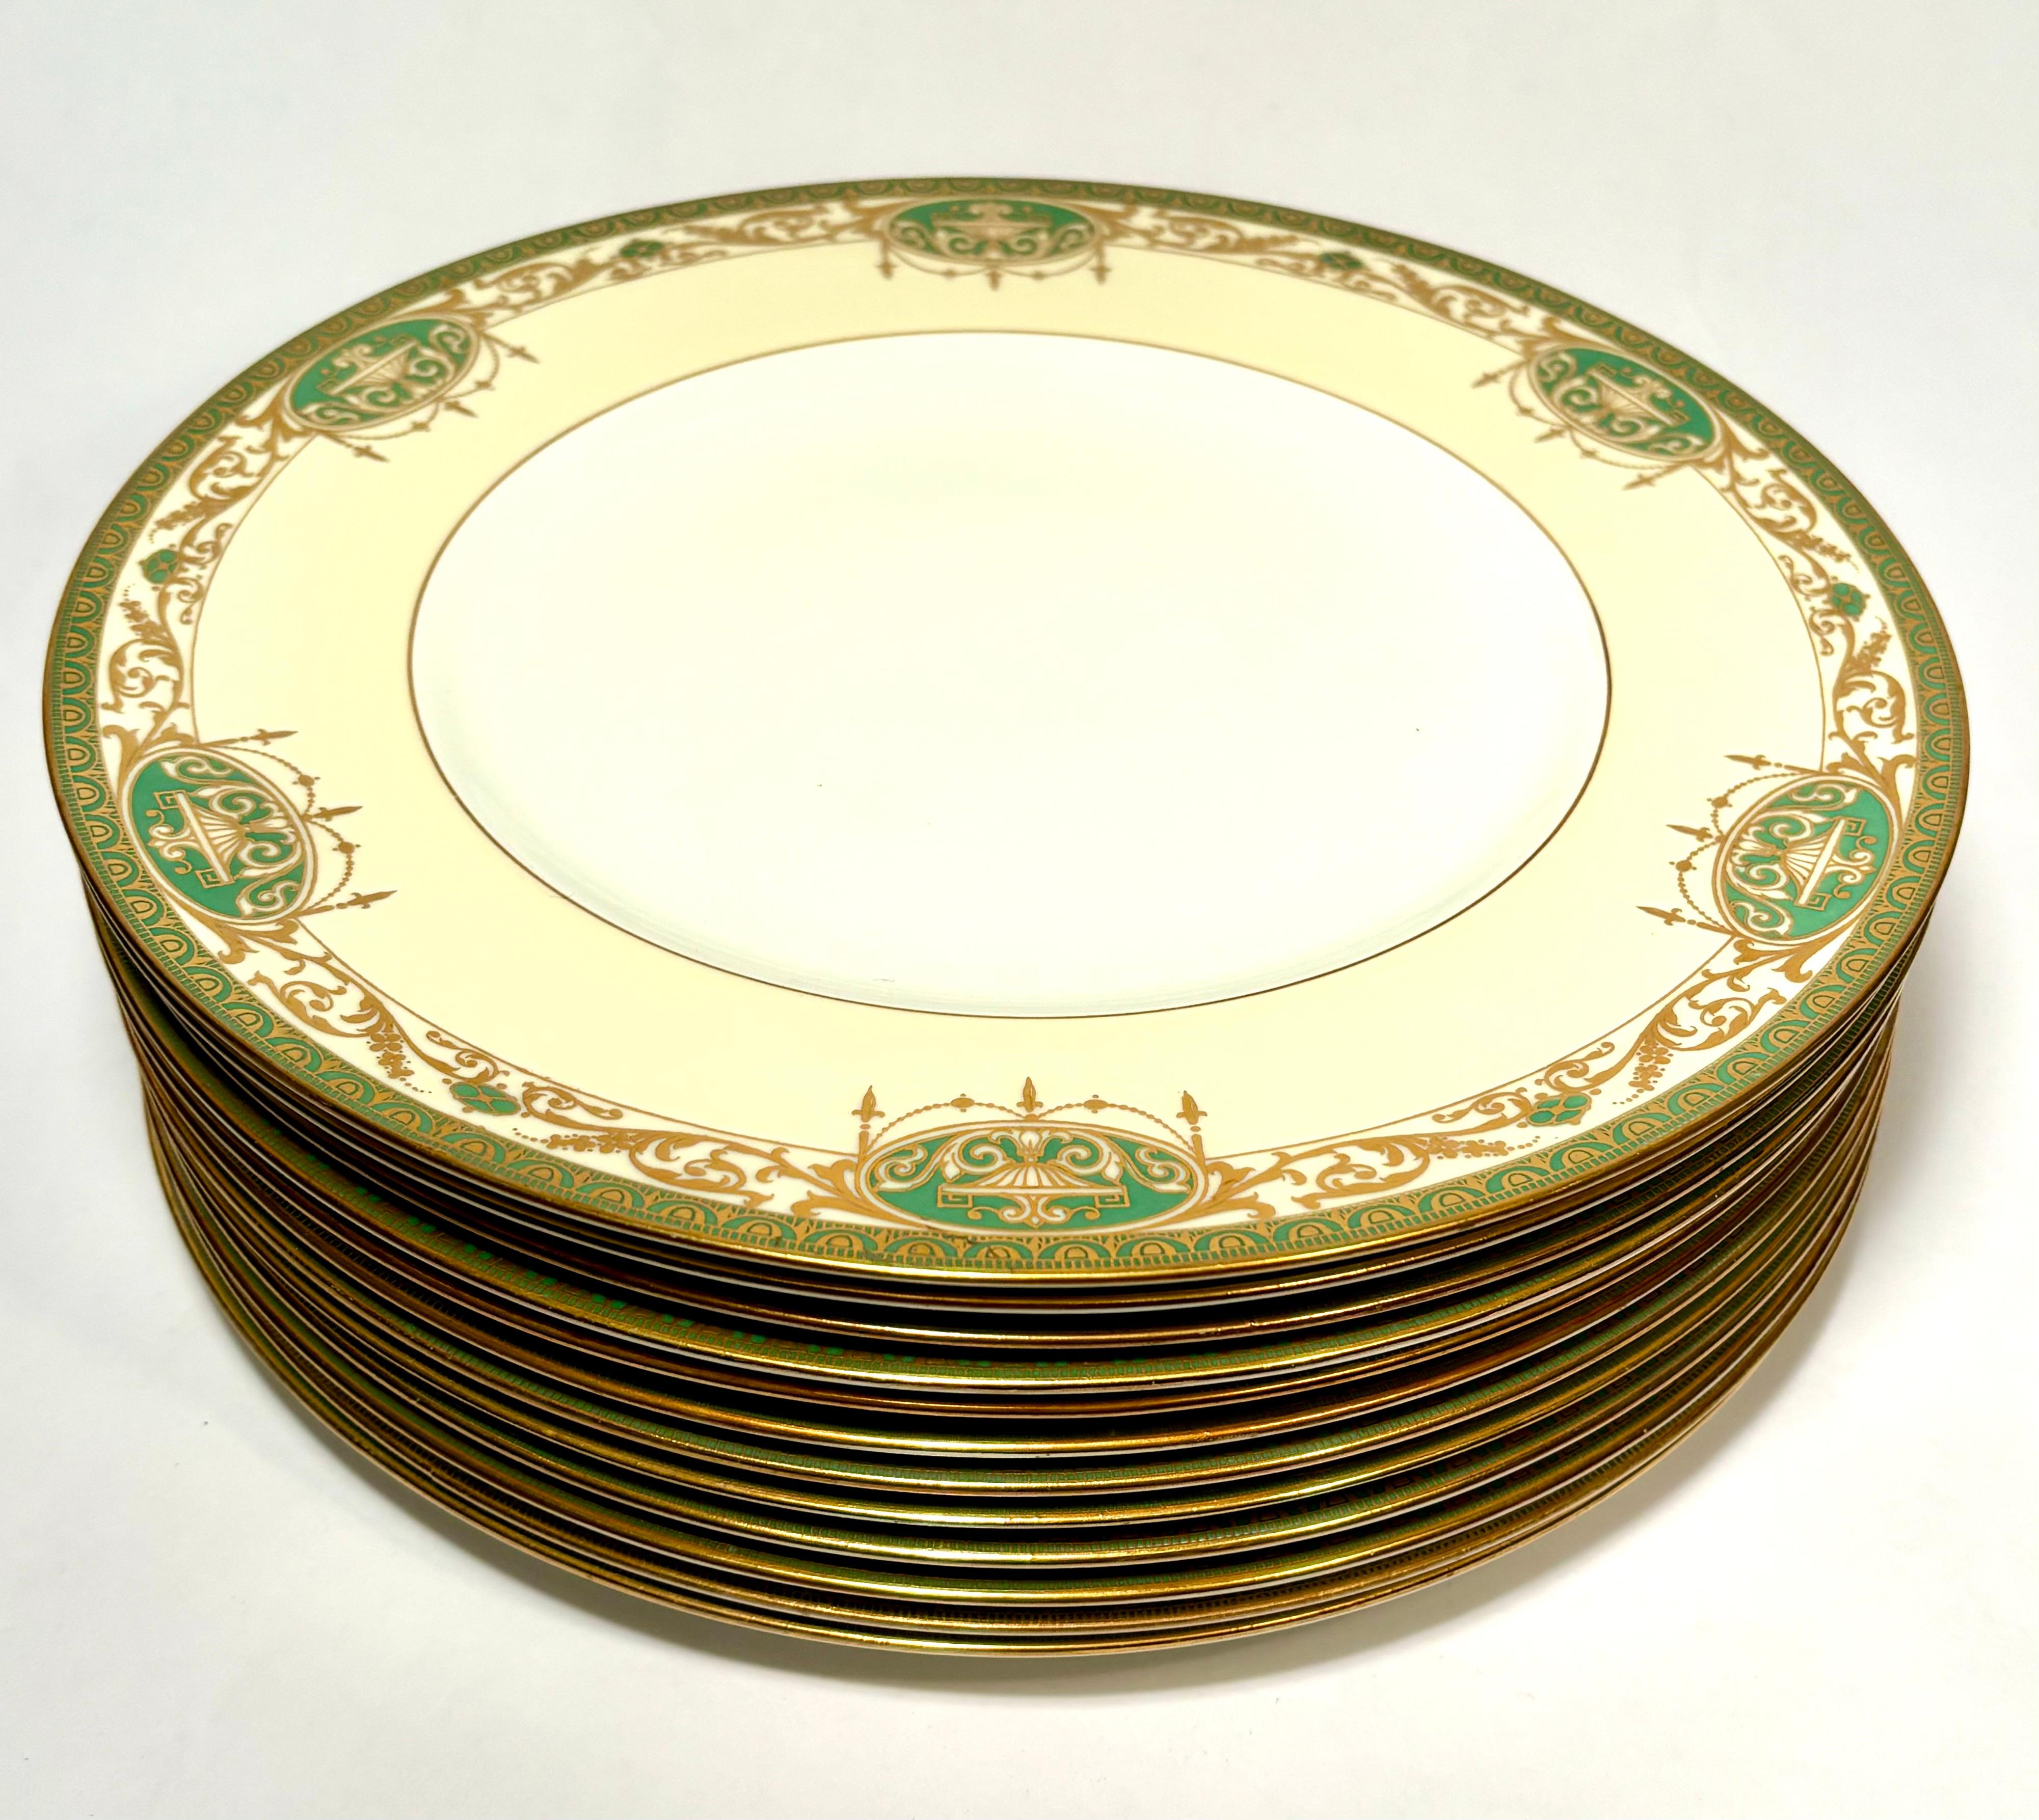 Un élégant ensemble de douze assiettes à dîner de la célèbre manufacture anglaise Royal Worcester. Ce set présente un motif gaufré vert et or en relief d'une urne classique et d'une guirlande, avec juste ce qu'il faut d'accent crème dans son col. En